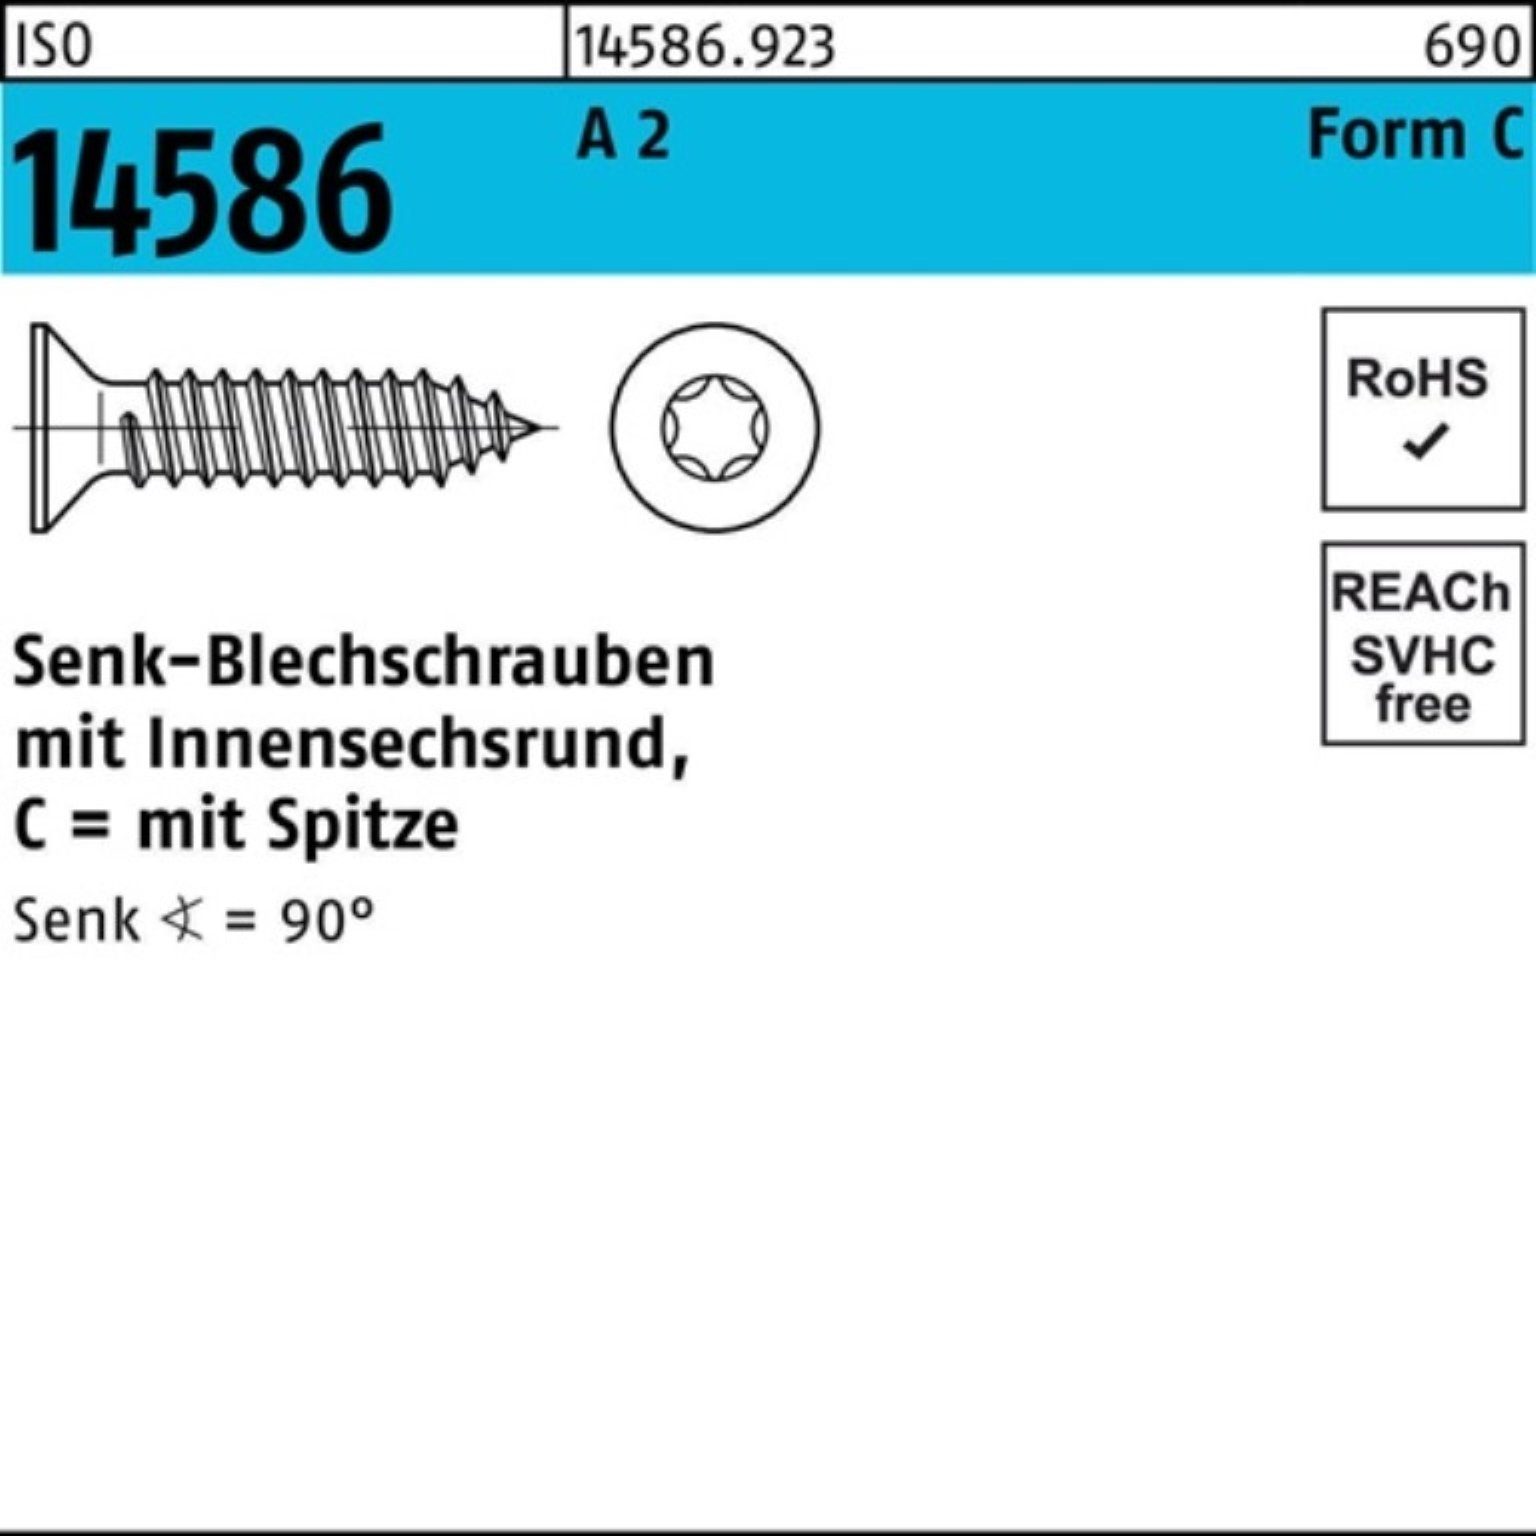 Reyher Schraube 250er Pack Senkblechschraube ISO 14586 ISR/Spitze 4,8x 45 -C T25 A 2 2